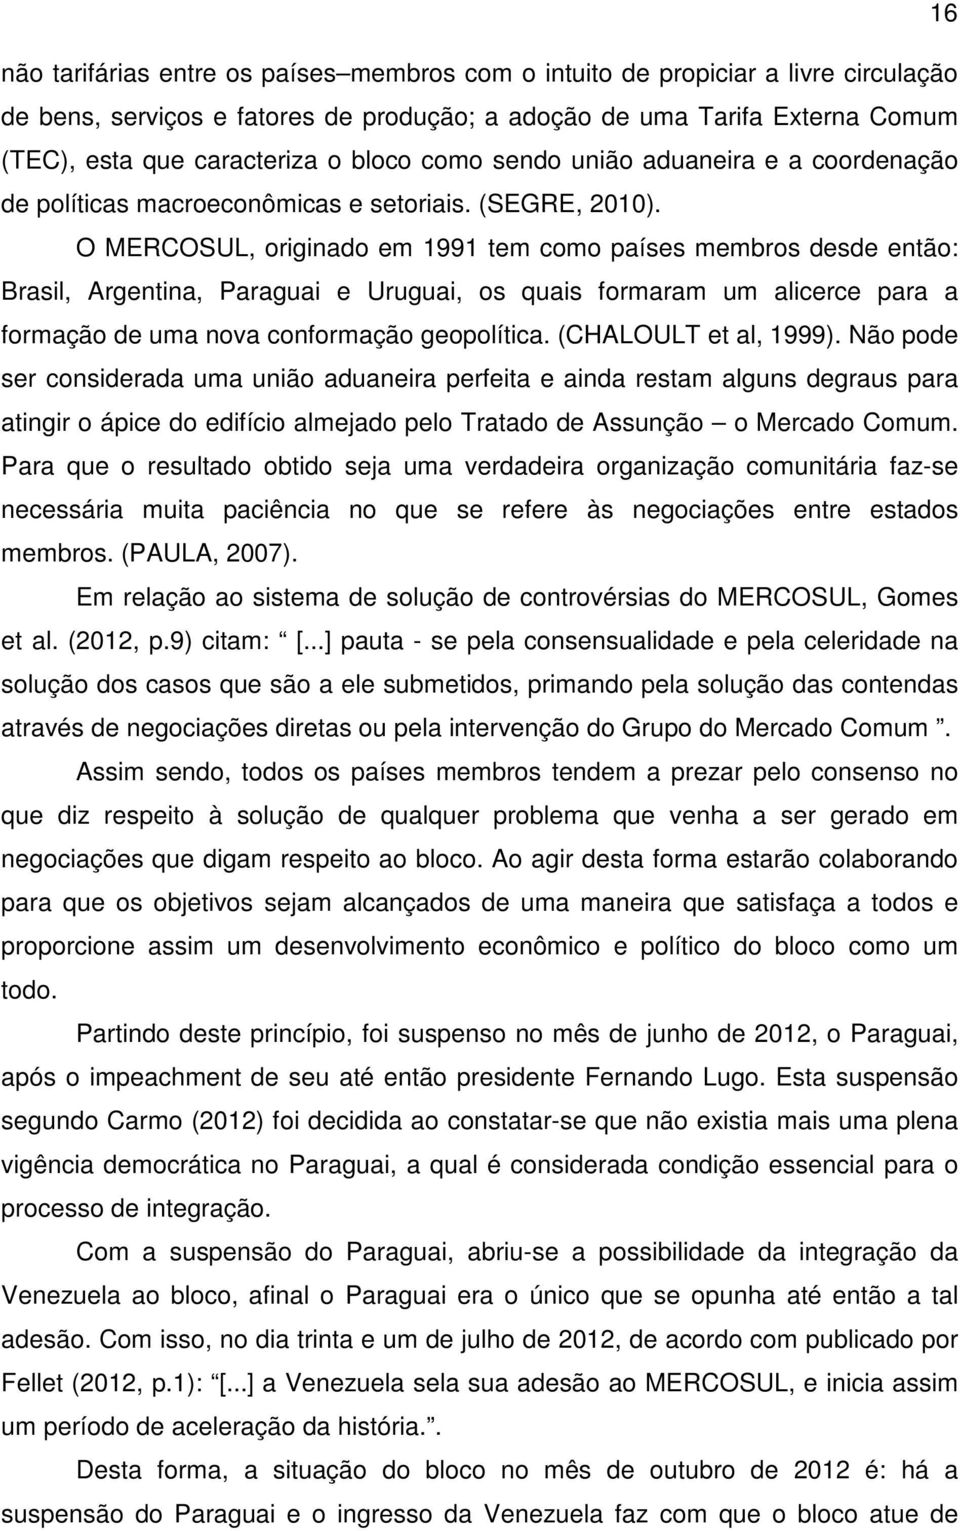 O MERCOSUL, originado em 1991 tem como países membros desde então: Brasil, Argentina, Paraguai e Uruguai, os quais formaram um alicerce para a formação de uma nova conformação geopolítica.